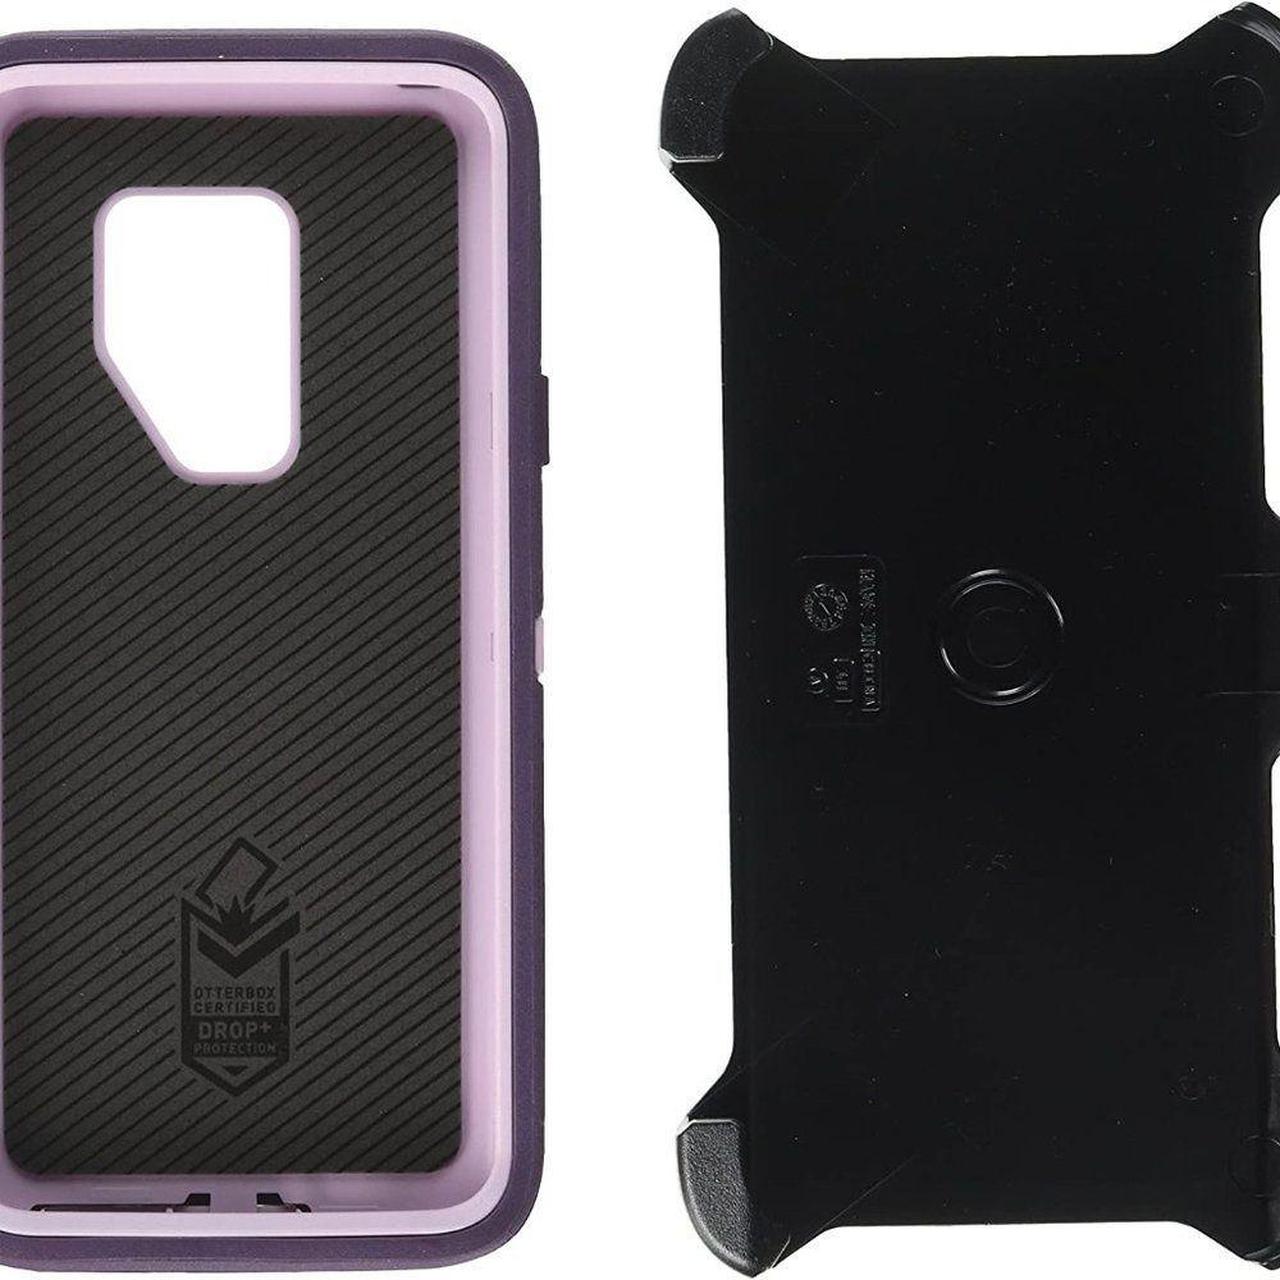 Case Scenario Purple Phone-cases (6)